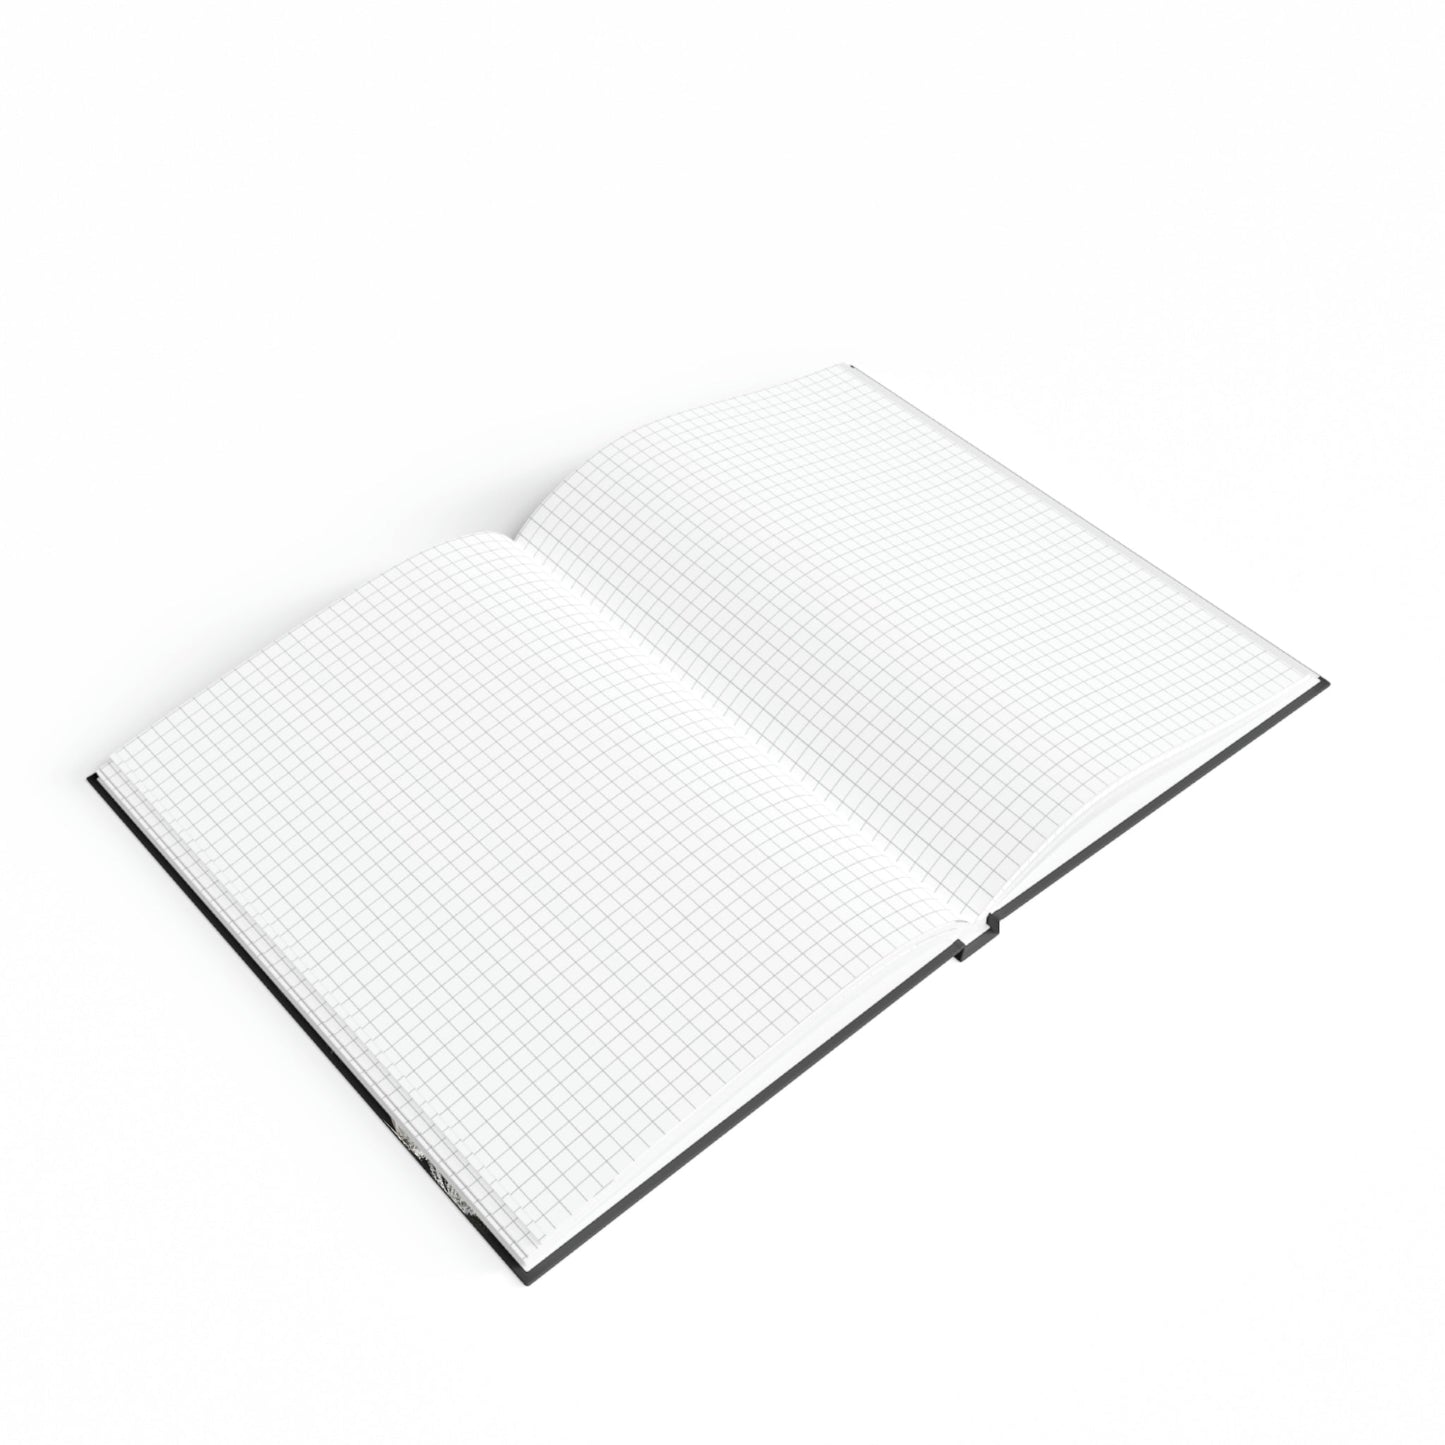 Biewer Terrier Notebook - Button's Bonnet - Biewer Terrier Inspirations - Hard Backed Journal